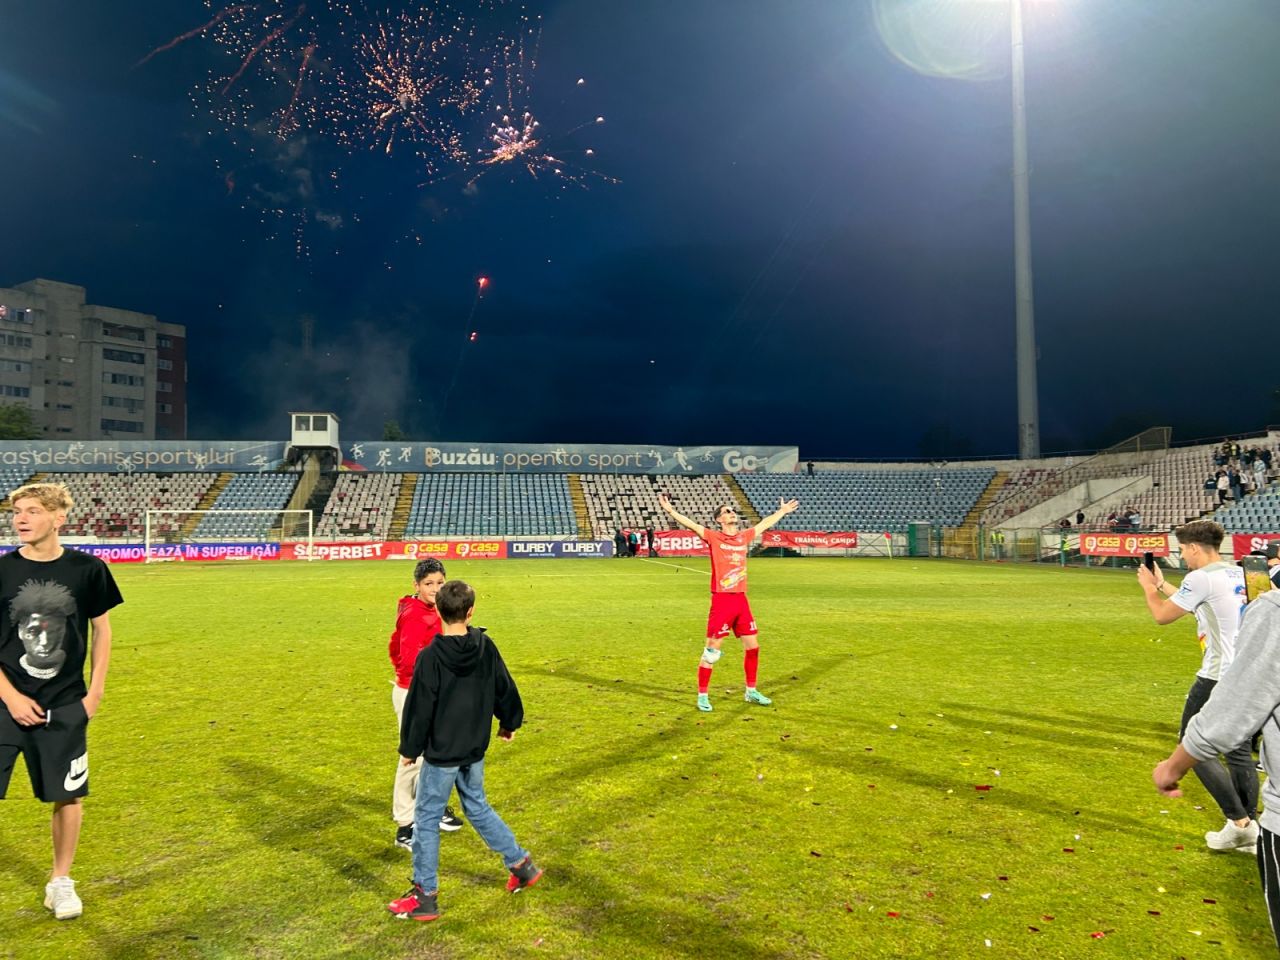 Sărbătoare la Buzău! Fotbaliștii s-au bucurat alături de fani în urma promovării istorice. Vali Dumitrache: ”Am muncit un an pentru asta”_23